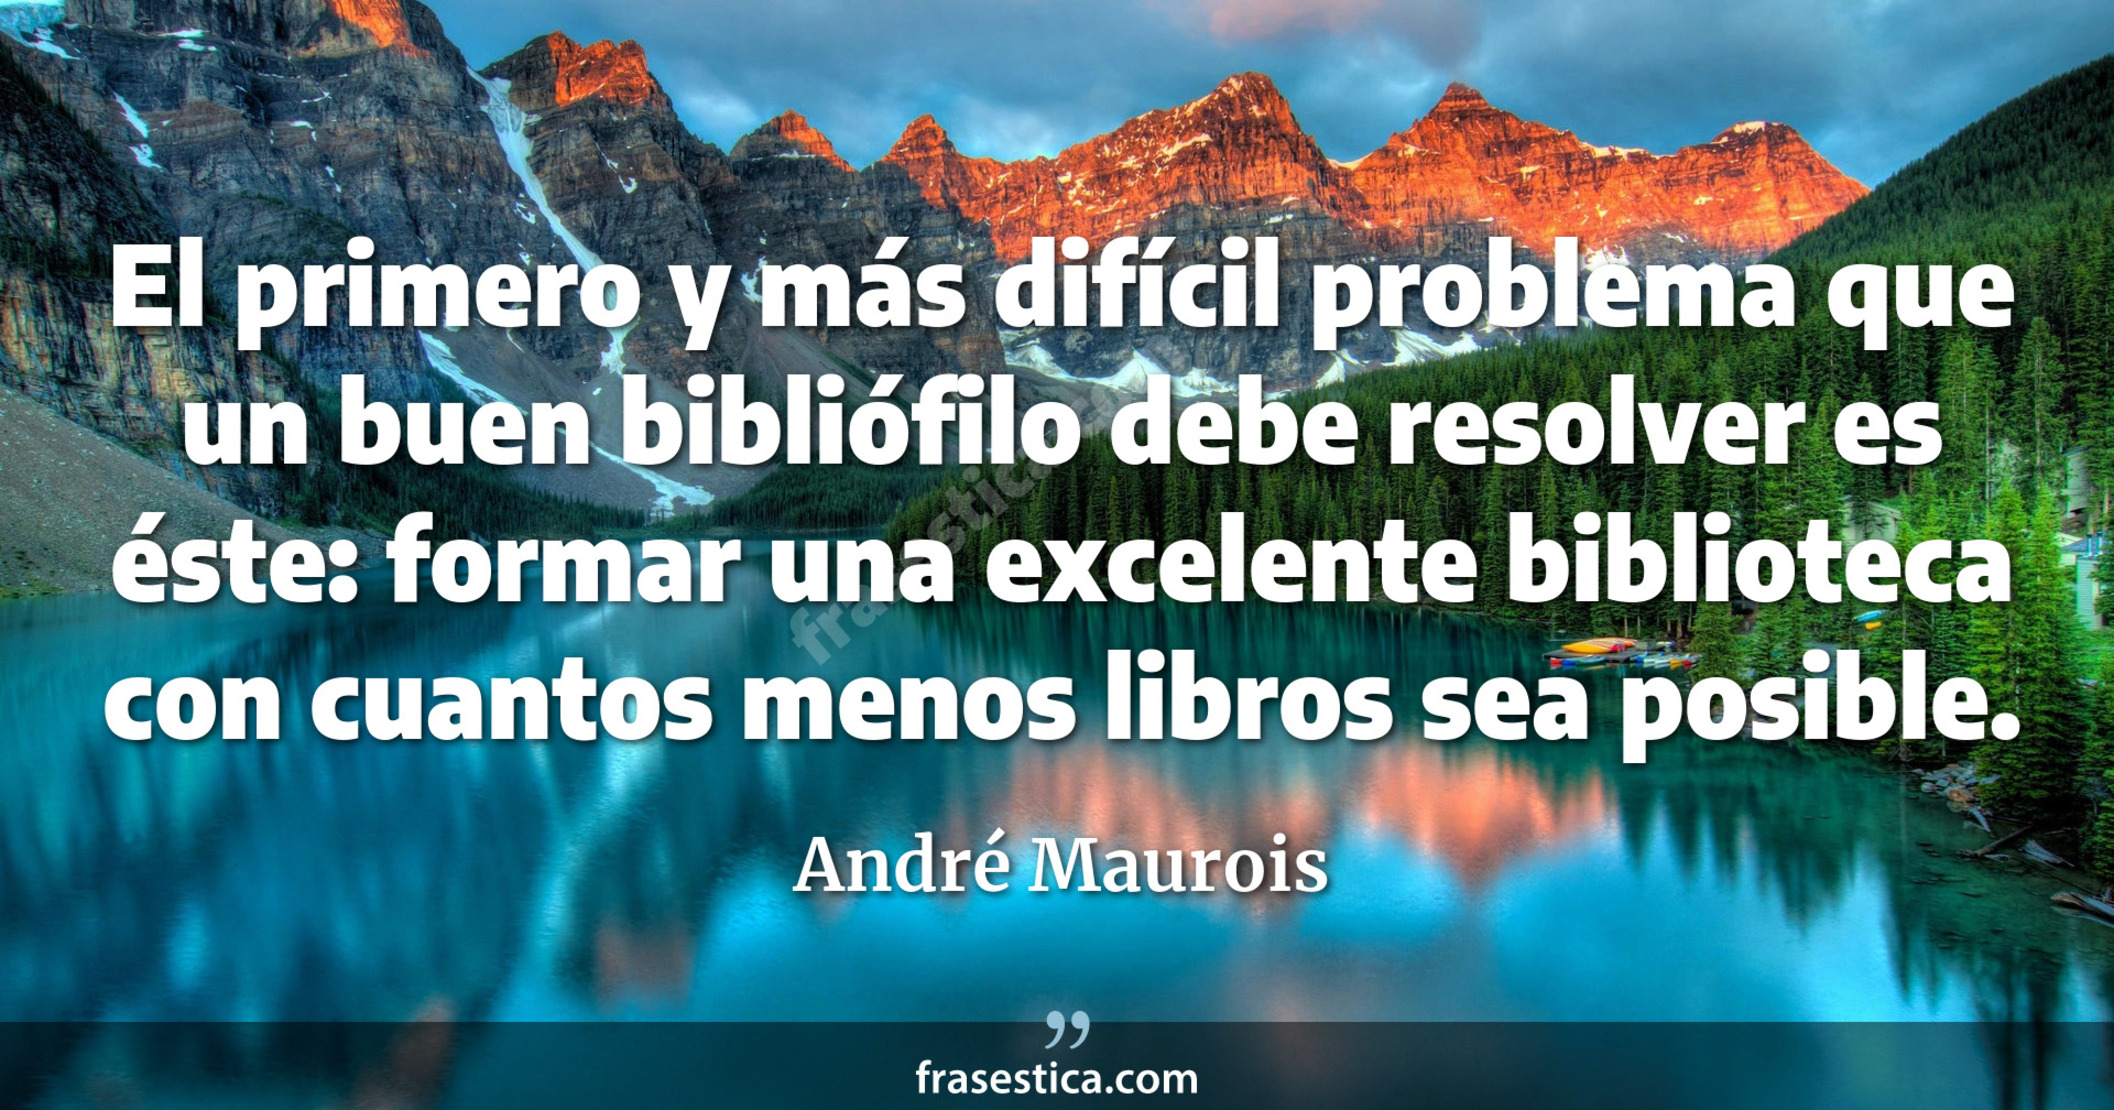 El primero y más difícil problema que un buen bibliófilo debe resolver es éste: formar una excelente biblioteca con cuantos menos libros sea posible. - André Maurois